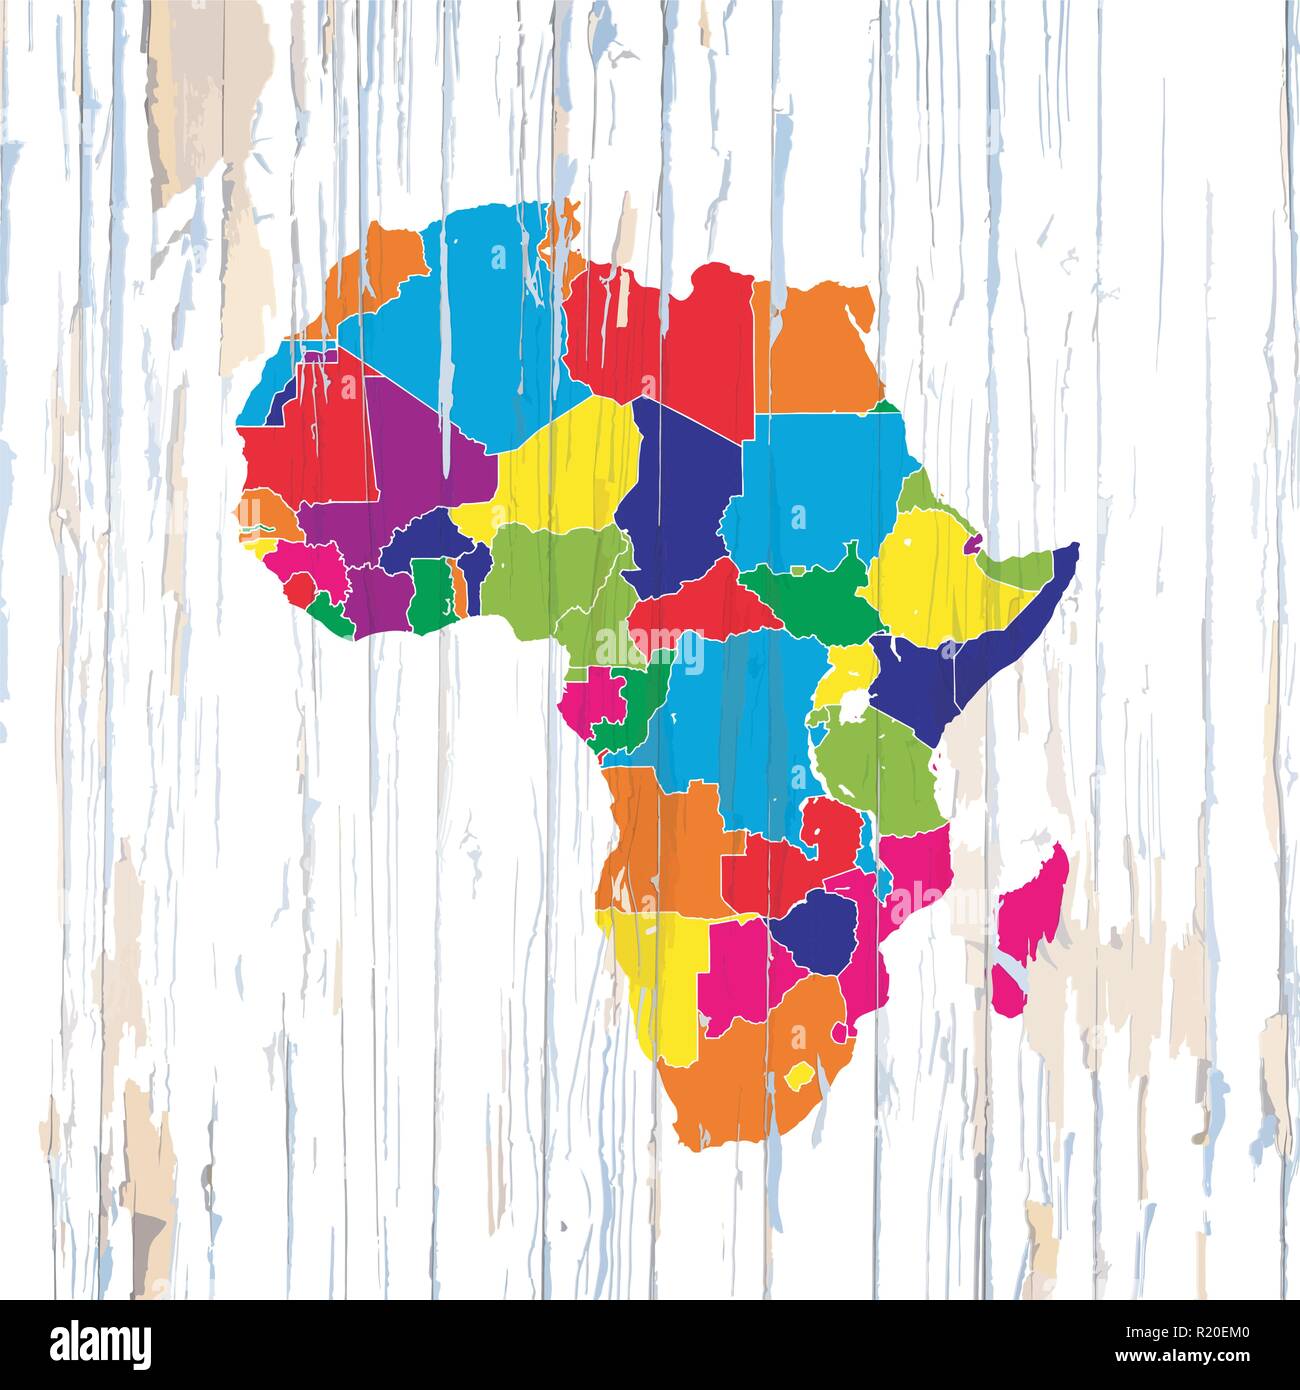 Bunte Karte der afrikanischen Länder. Vector Illustration Vorlage für Wand Kunst und Marketing im quadratischen Format. Stock Vektor